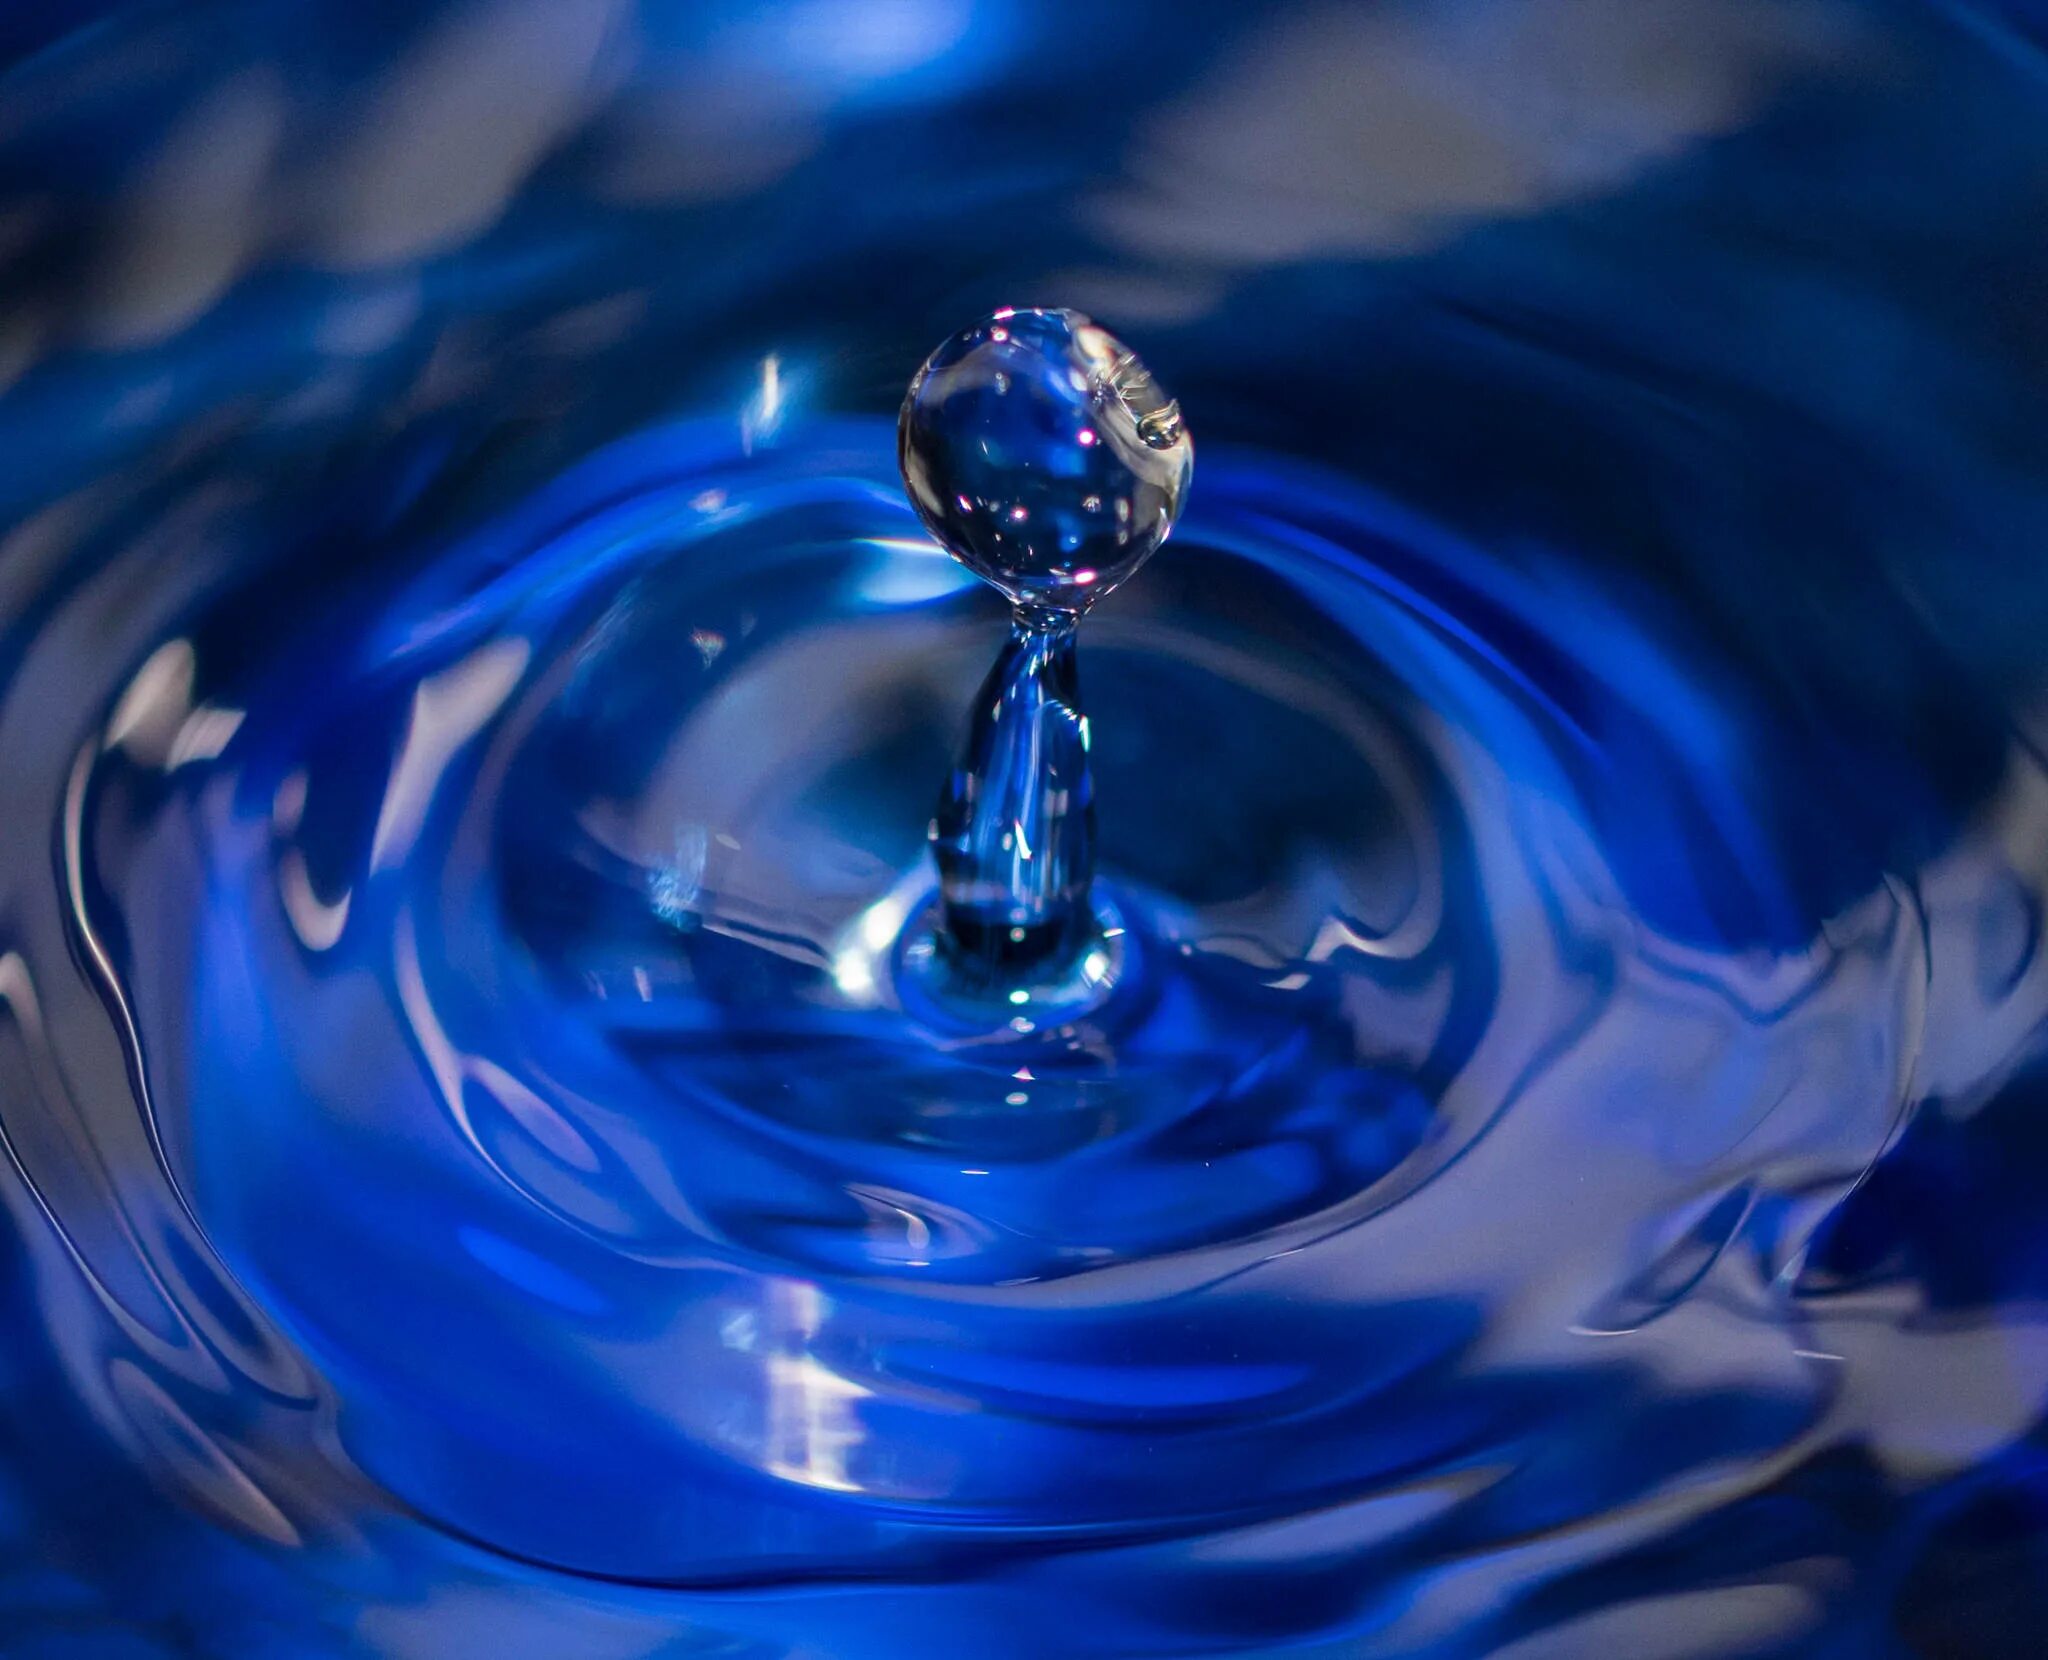 D вода. Блу Уотер. Картинки синего фонтана с голубой водой.